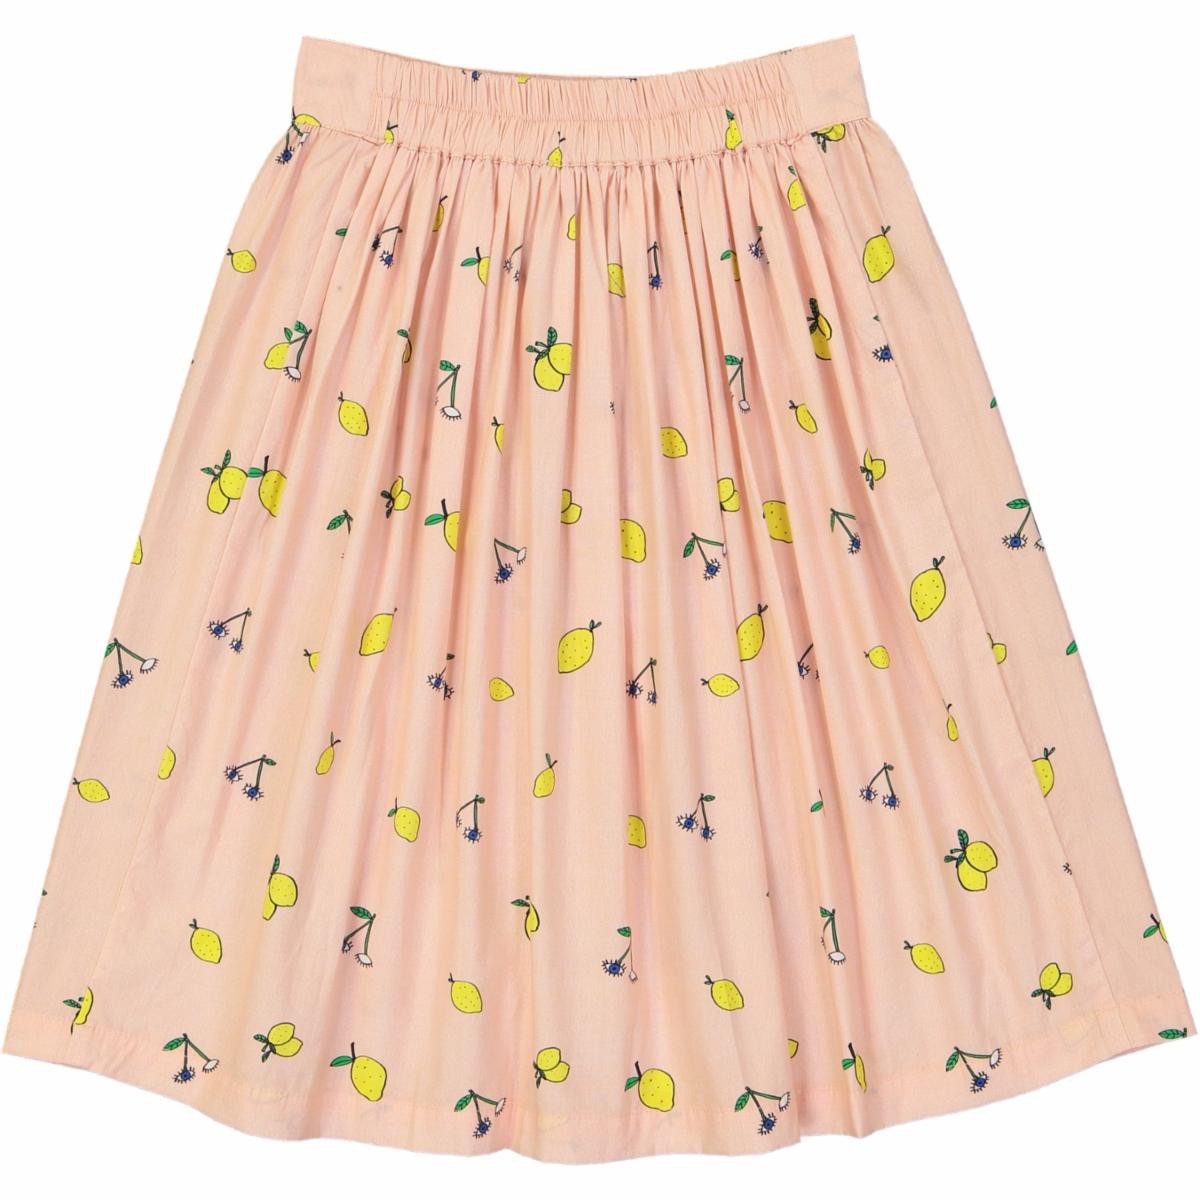 Charlotte skirt